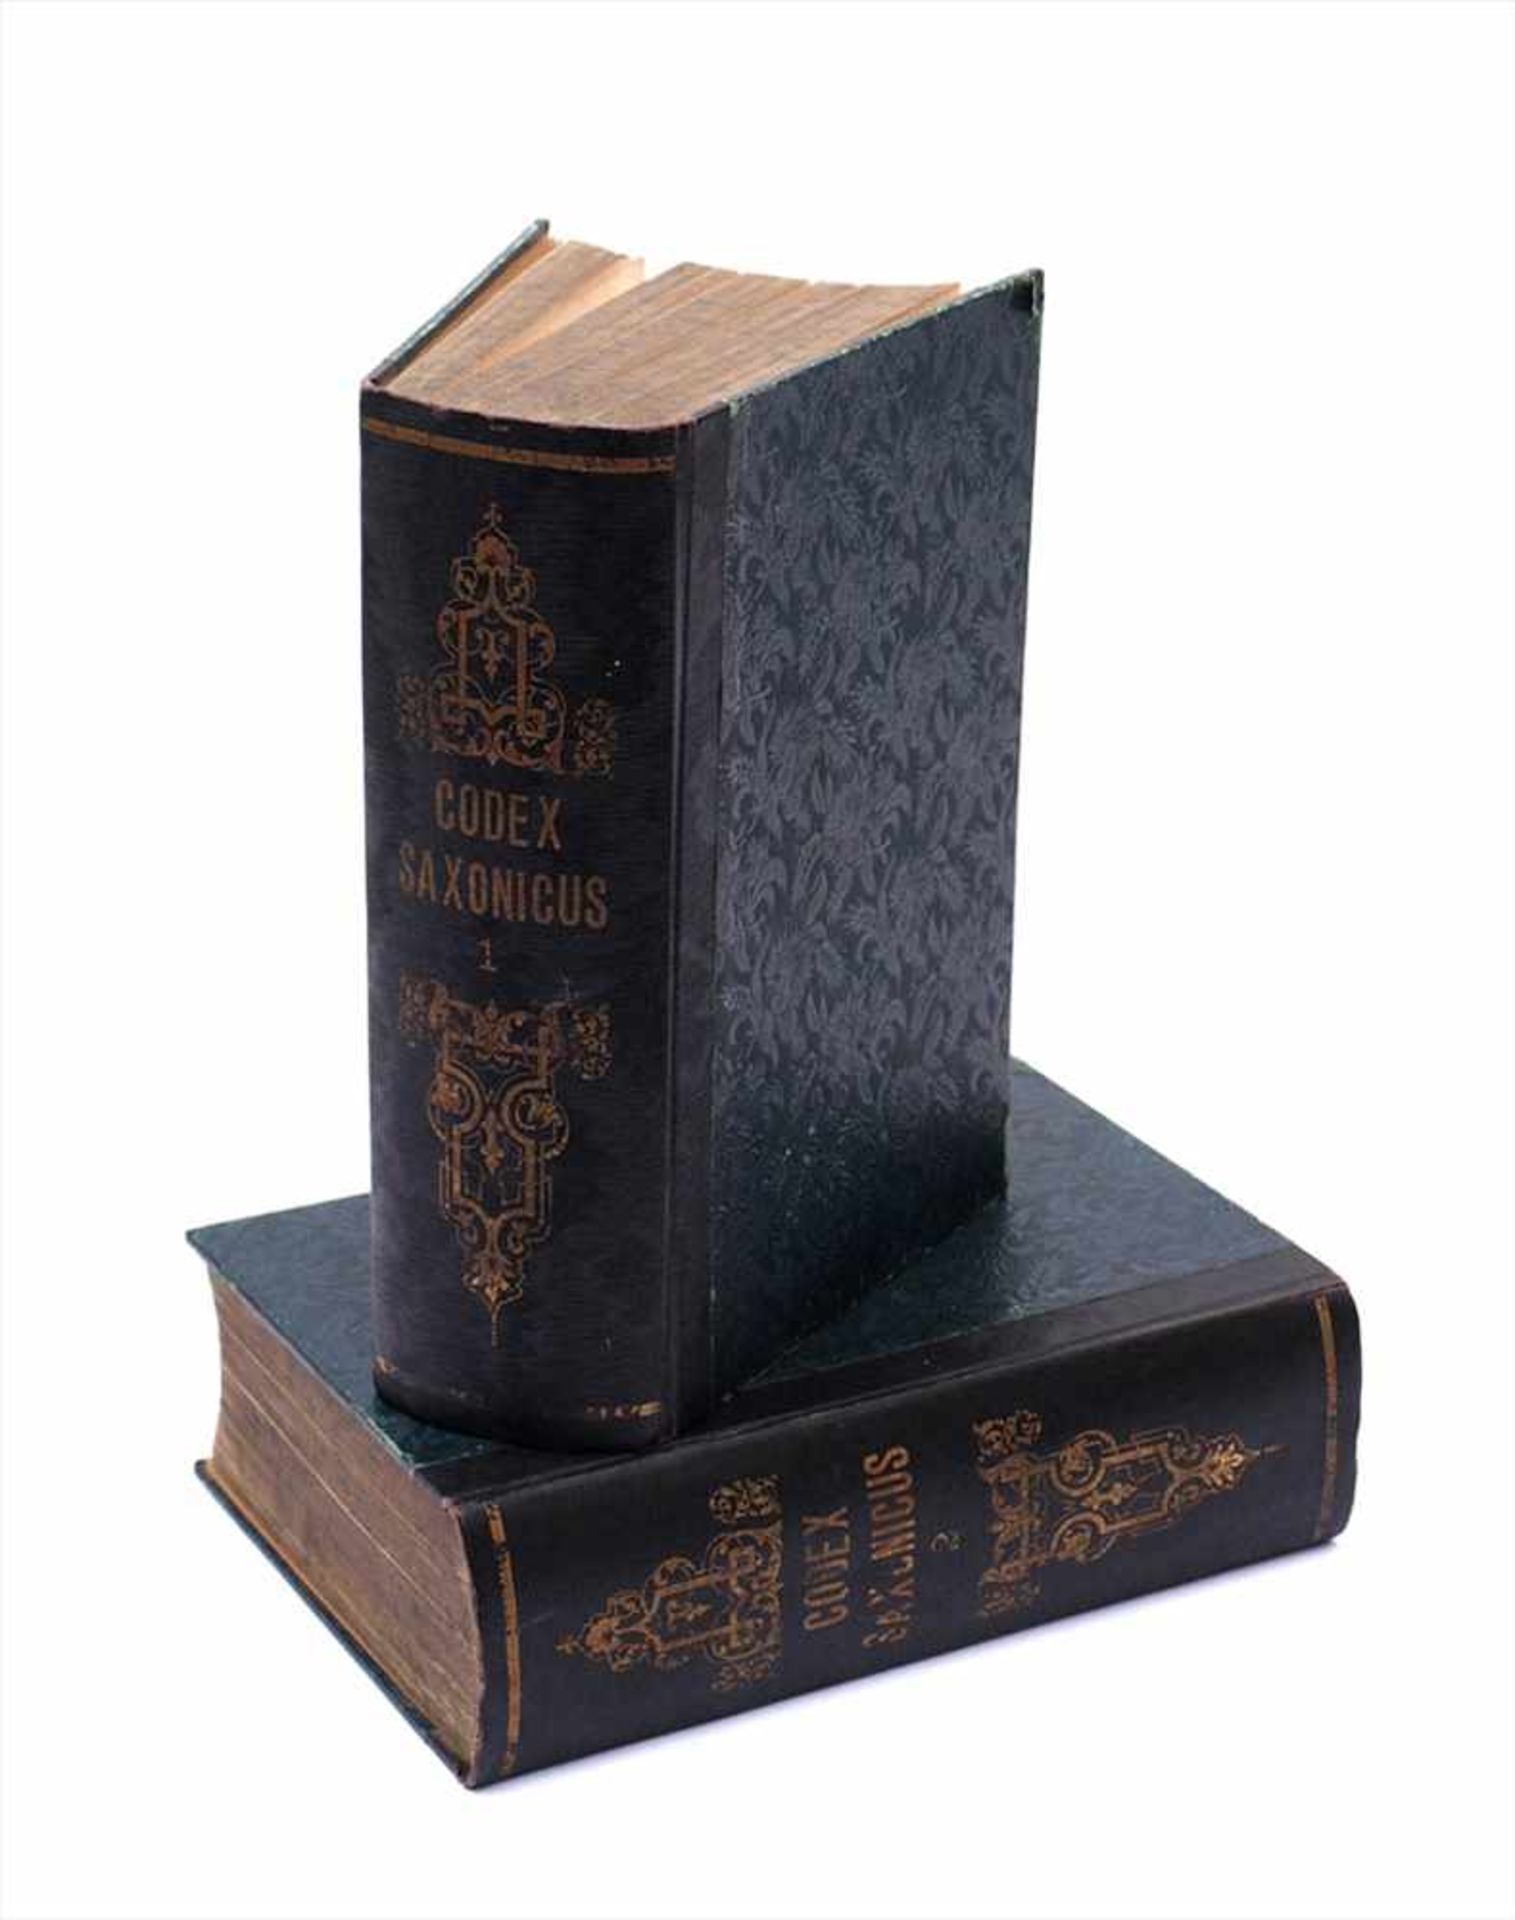 Codex Saxonicus2 Bde., Reclam, Leipzig 1842. Sammlung der sächsischen Gesetze aus der Zeit von